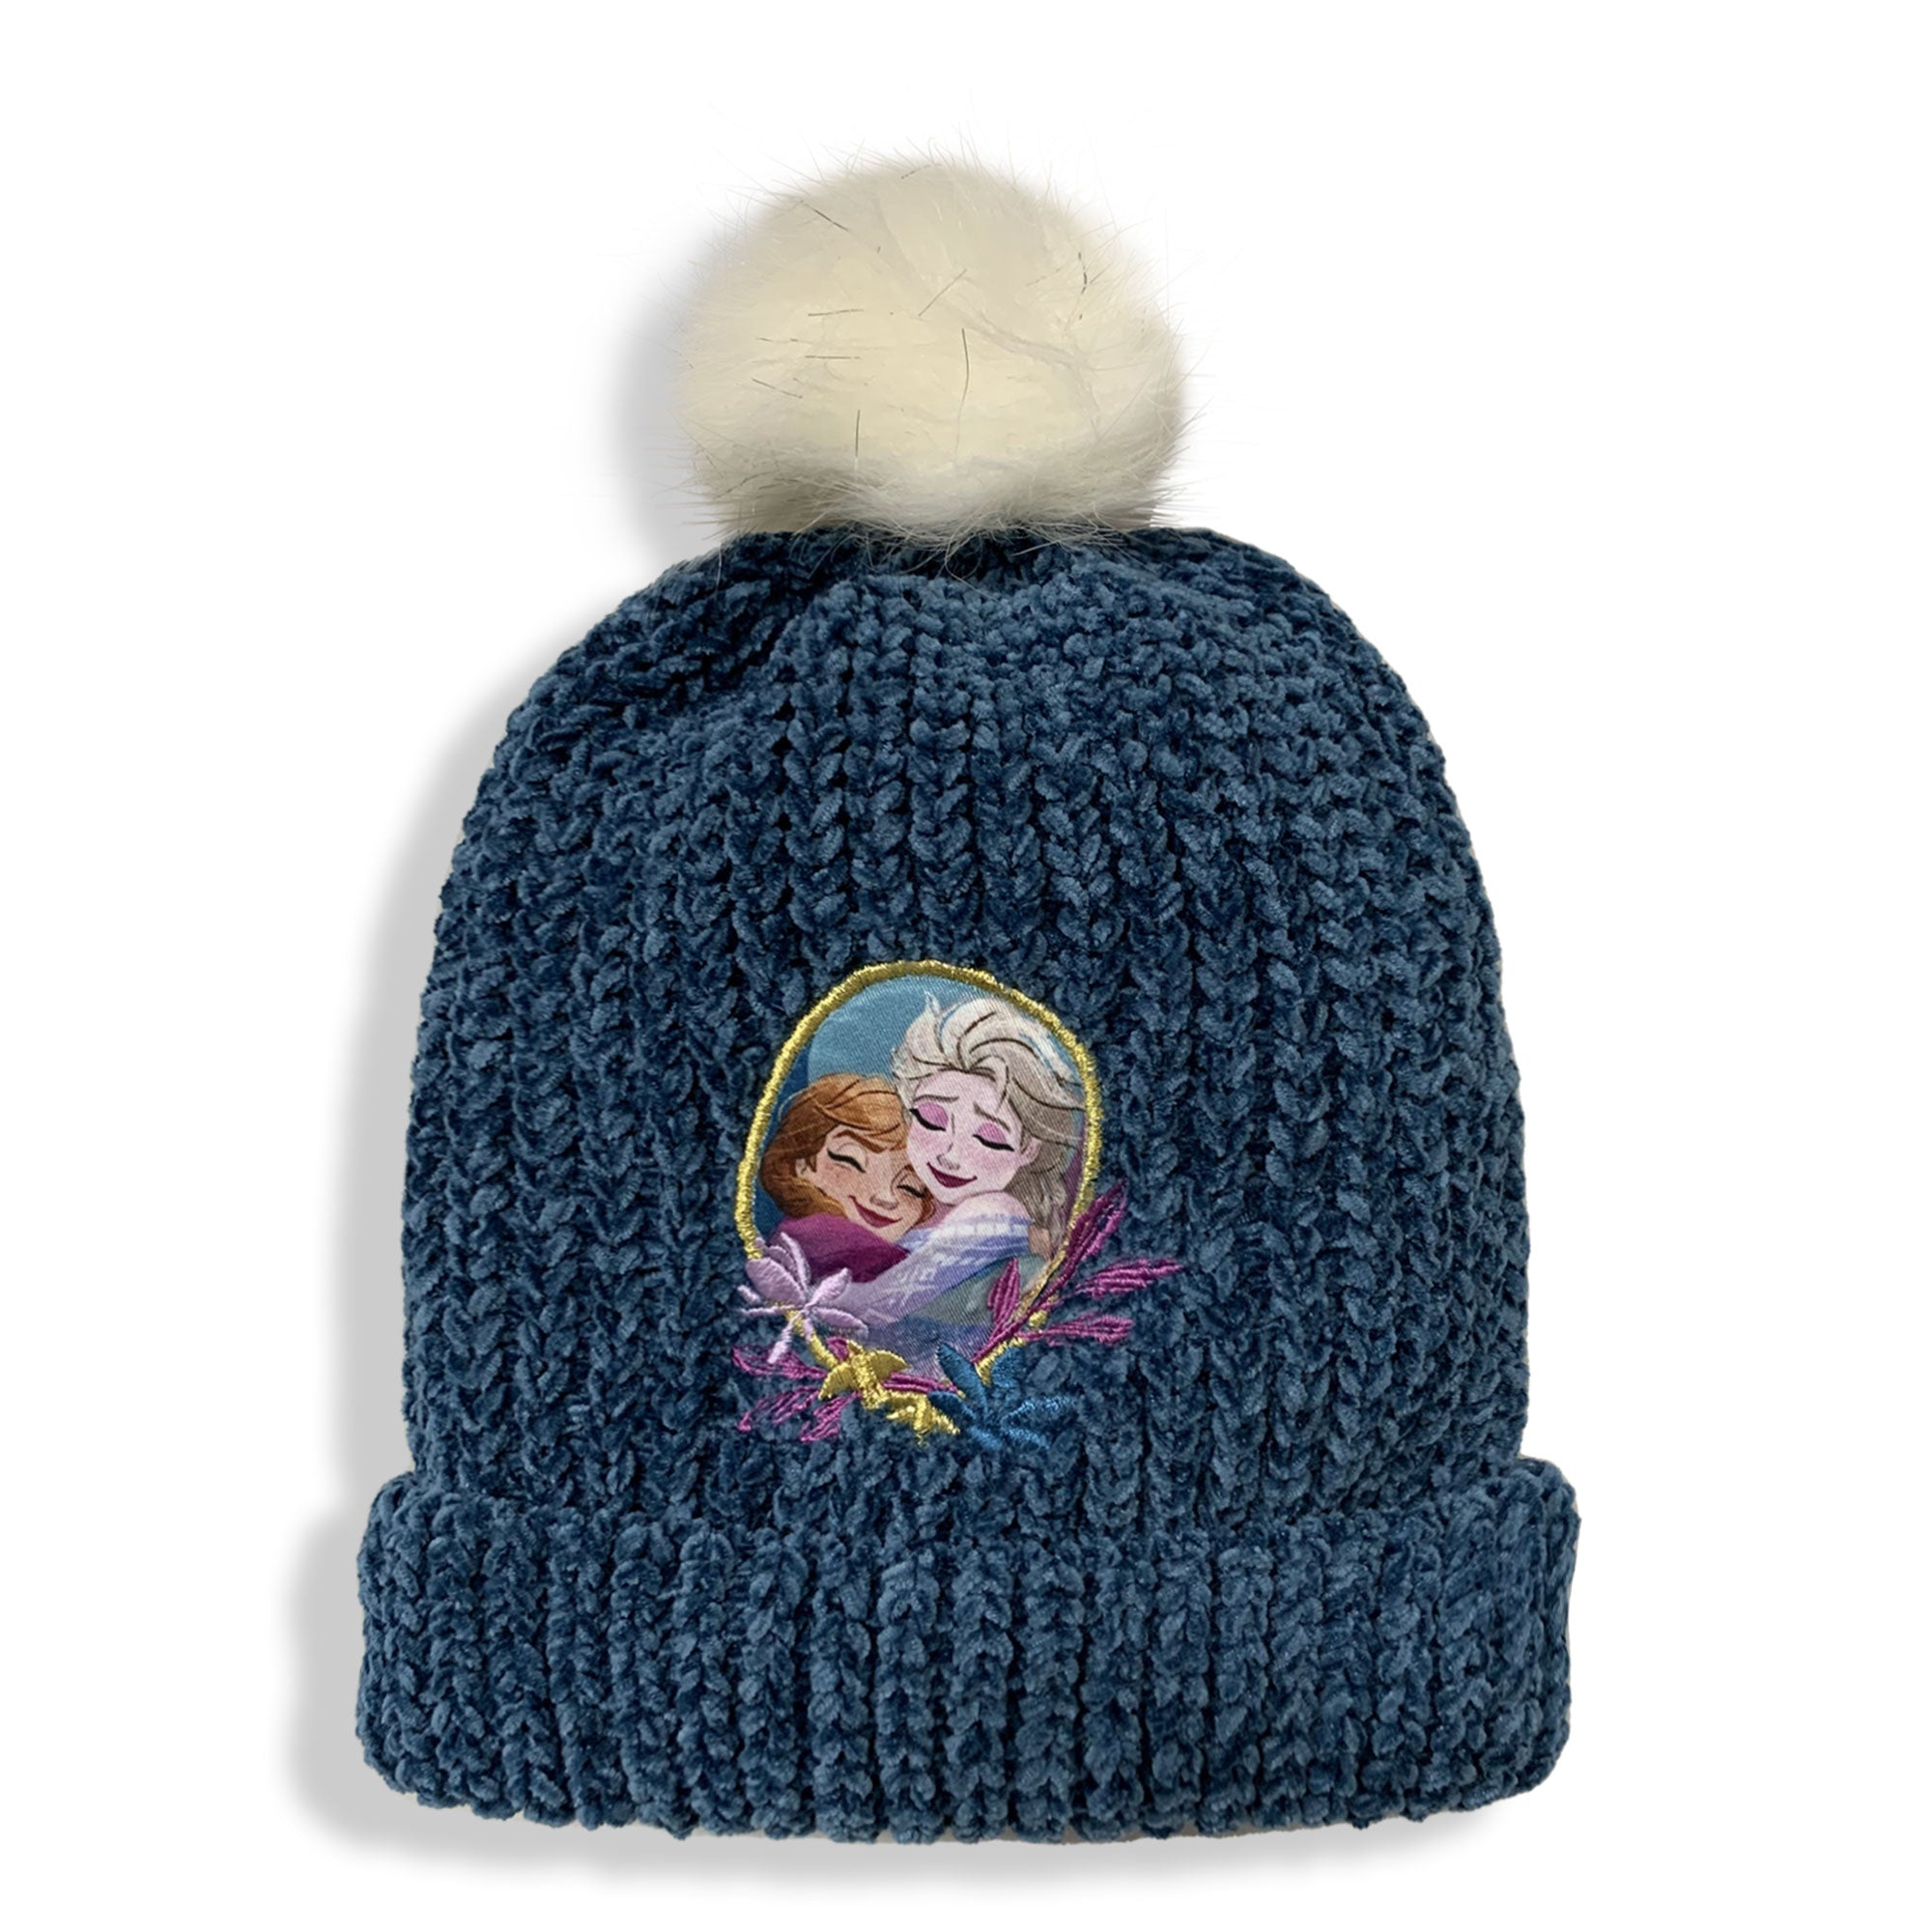 Cappello Disney Frozen Elsa e Anna invernale bambina con pon pon bimba 5896